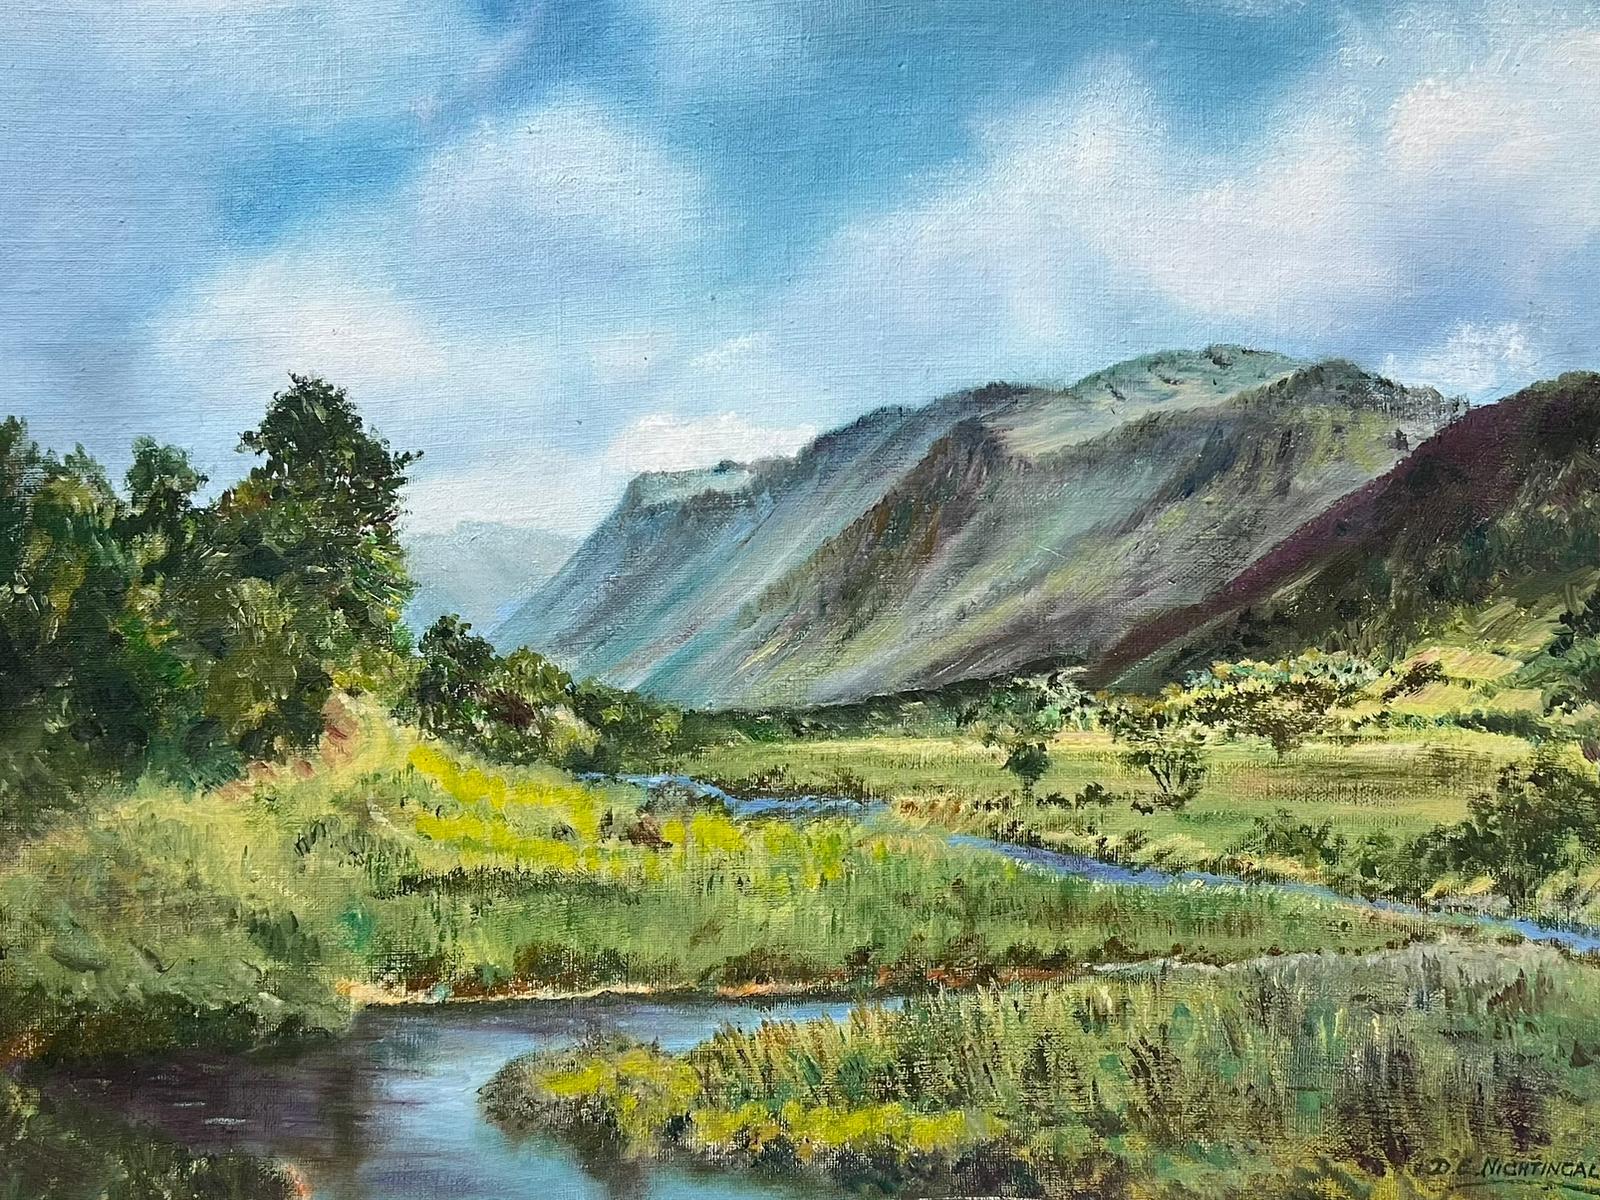 Landscape Painting D. E. Nightingale - Peinture à l'huile - Paysage de rivière Afon au nord du Pays de Galles, signée Abergynolwyn